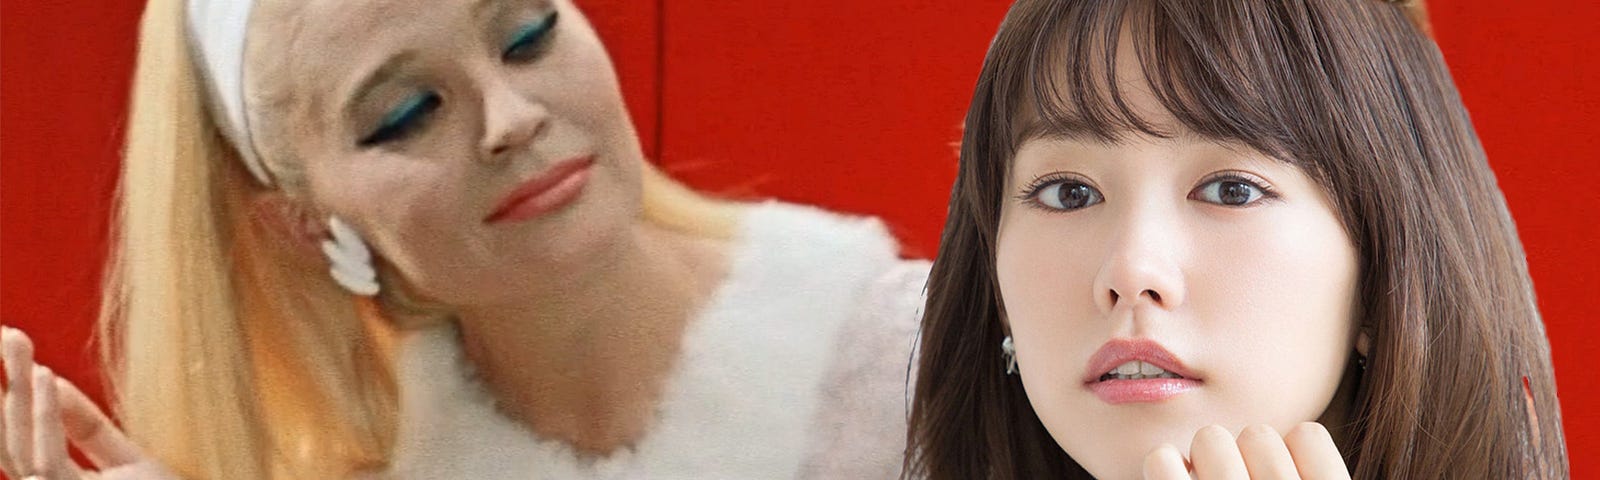 Советская (слева) и японская (справа) жёны [фотоколлаж с использованием кадра из фильма “Бриллиантовая рука”]